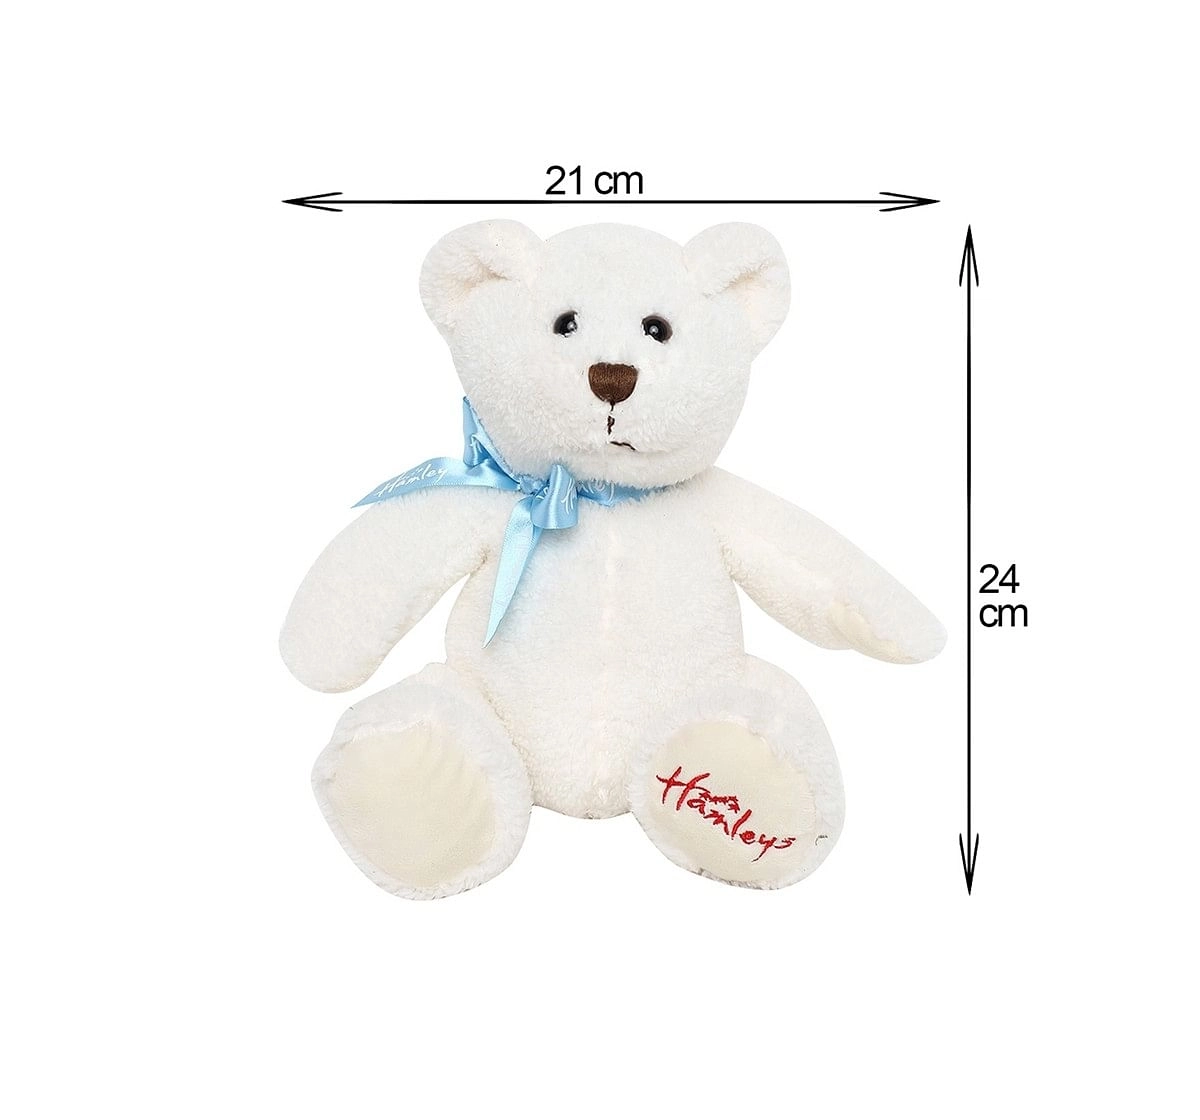  Hamleys Muffin Bear , White Teddy Bears for Kids age 0M+ - 13 Cm (White)